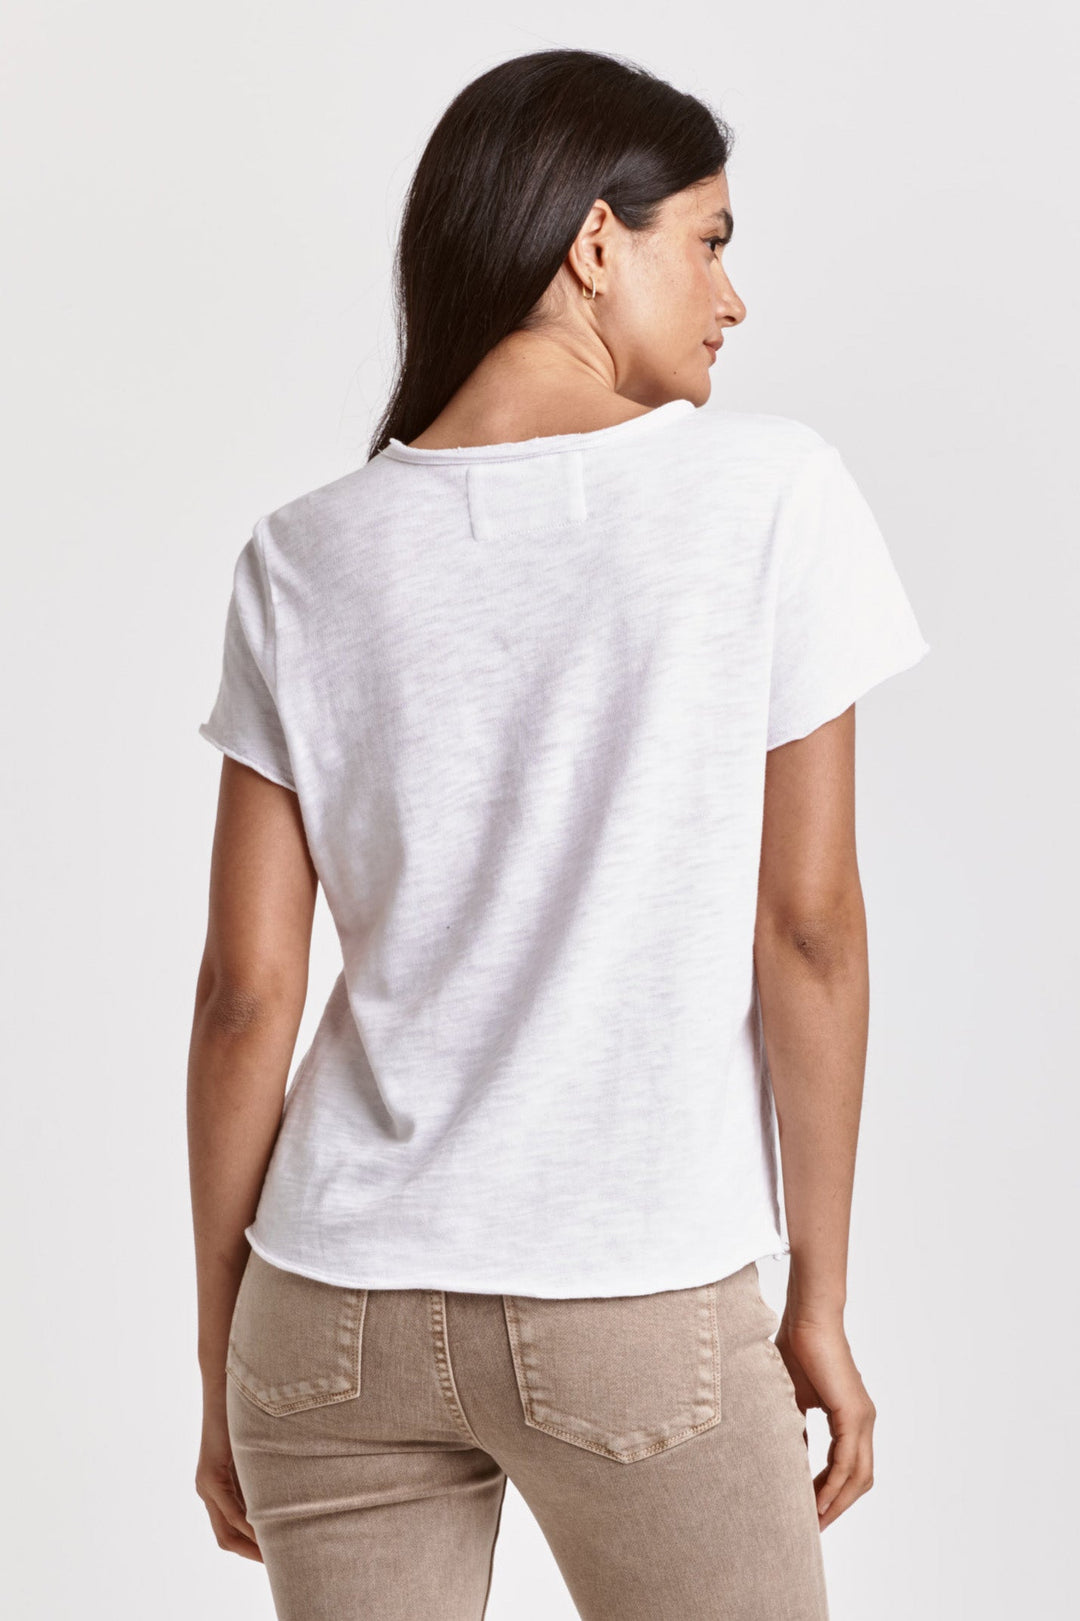 Vanya Cropped Shirt - White